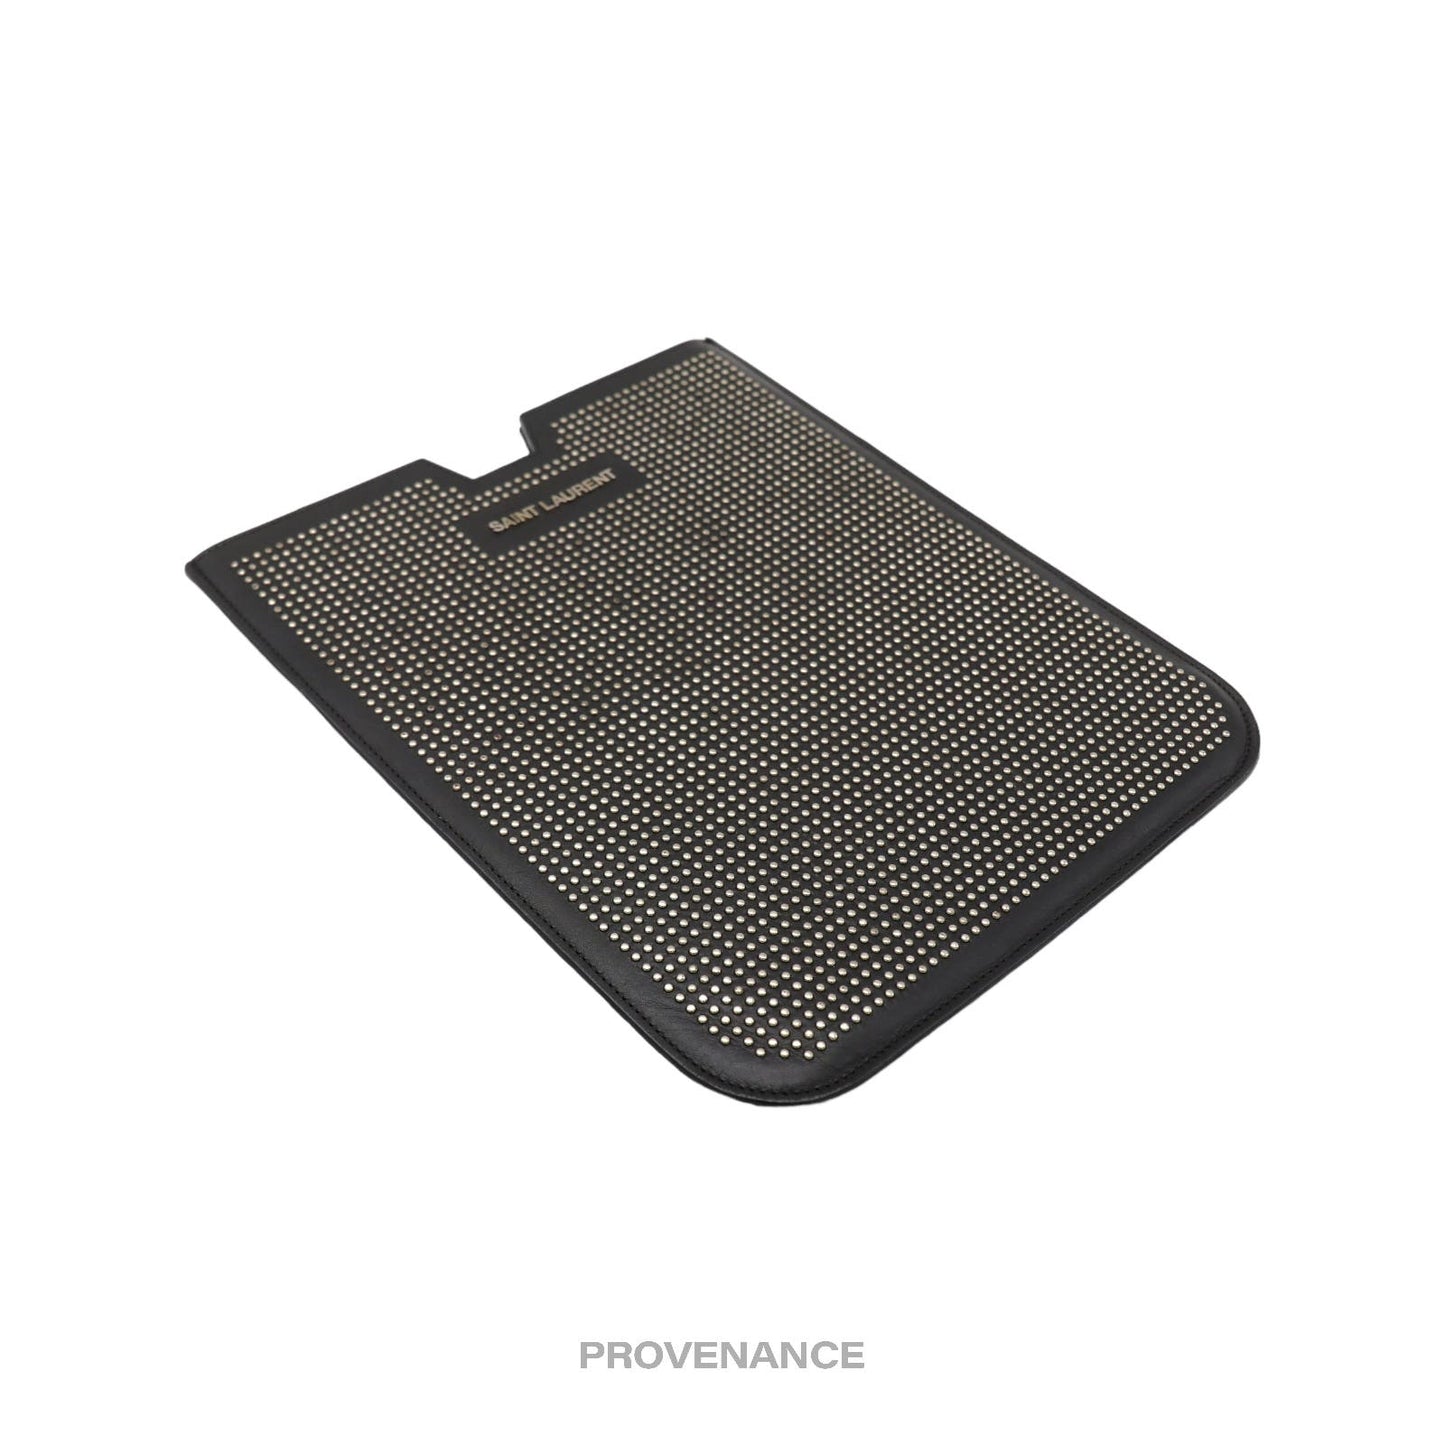 🔴 Saint Laurent Paris SLP iPad Case - Studded Black Leather